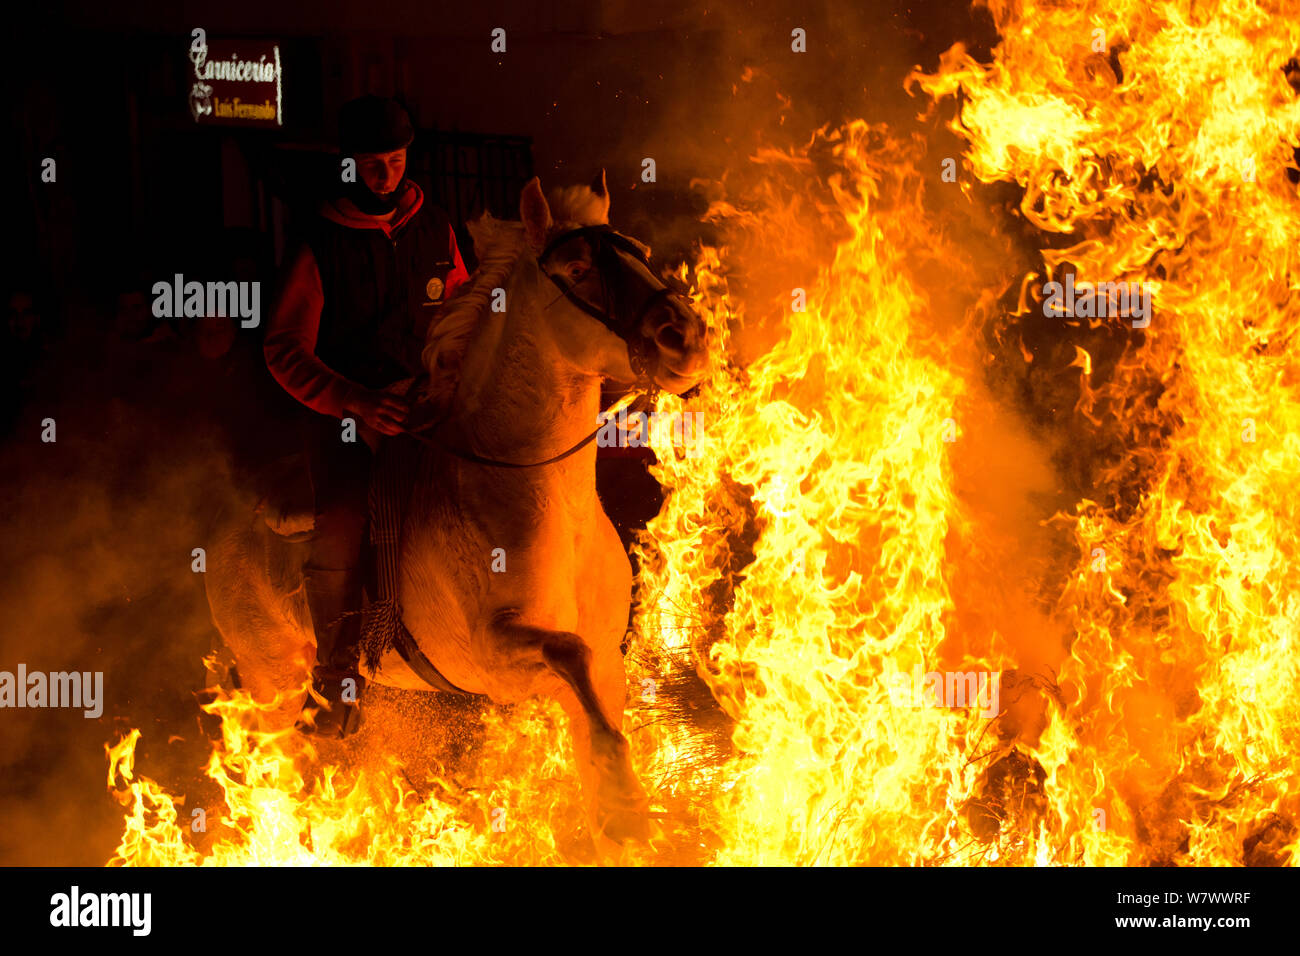 Giovane uomo saltare attraverso il fuoco per purificare il suo cavallo durante il festival Luminarias, tenuto ogni Gennaio in San Bartolome de Pinares, provincia di Avila, Castiglia e Leon, Spagna, Gennaio 2014. Foto Stock